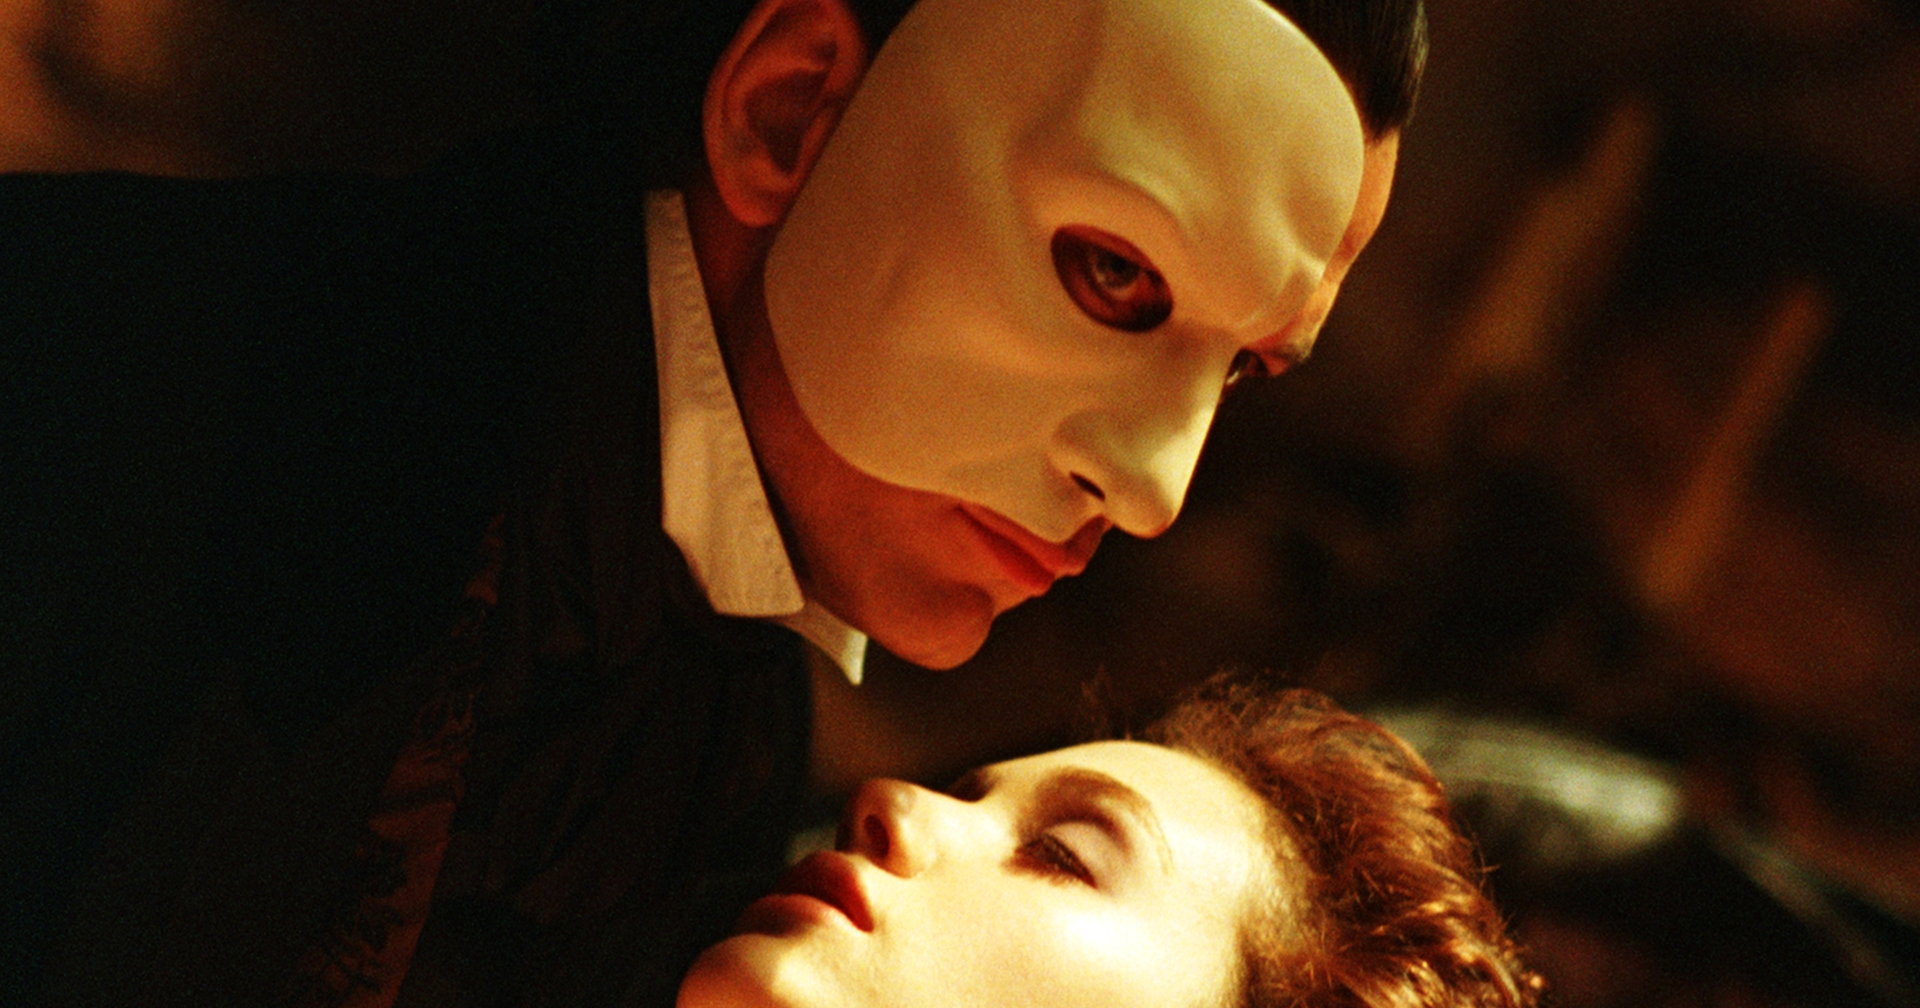 จอห์น เลเจนด์ เดินหน้าสร้าง ‘The Phantom Of The Opera’ เวอร์ชันใหม่ที่ทันสมัยยิ่งขึ้น